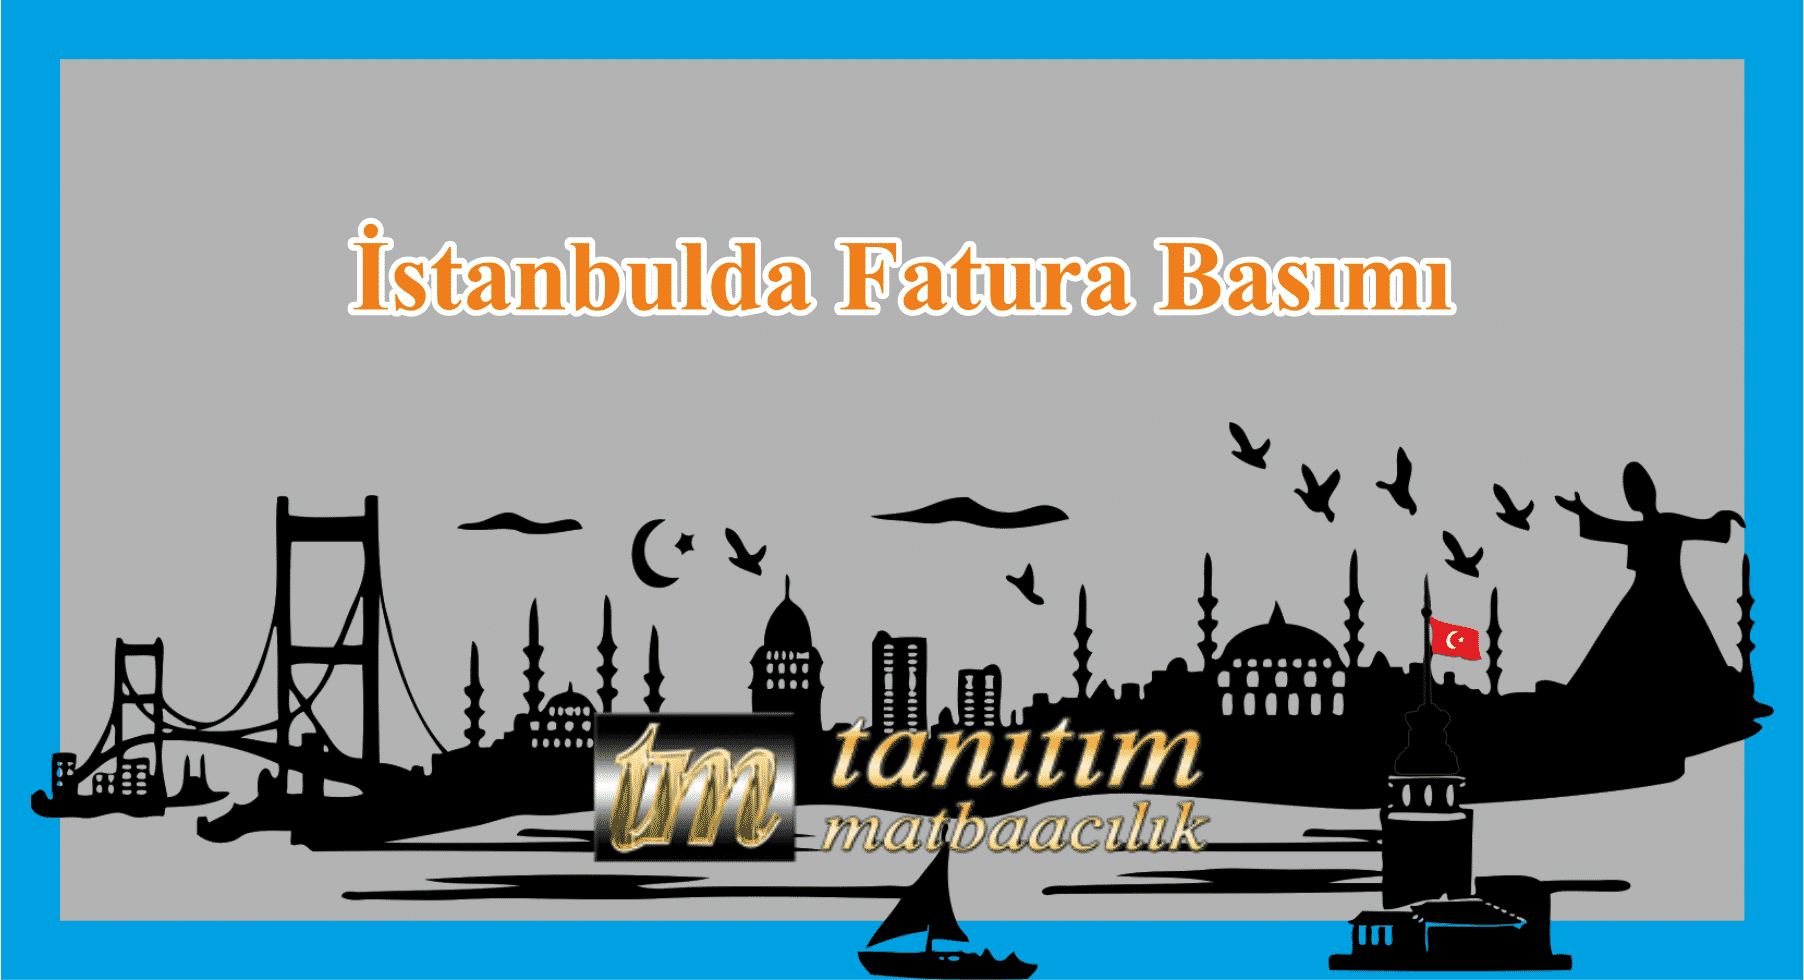 STANBULDA FATURA BASIMI - İstanbulda Hızlı ve Güvenilir Fatura Basımı